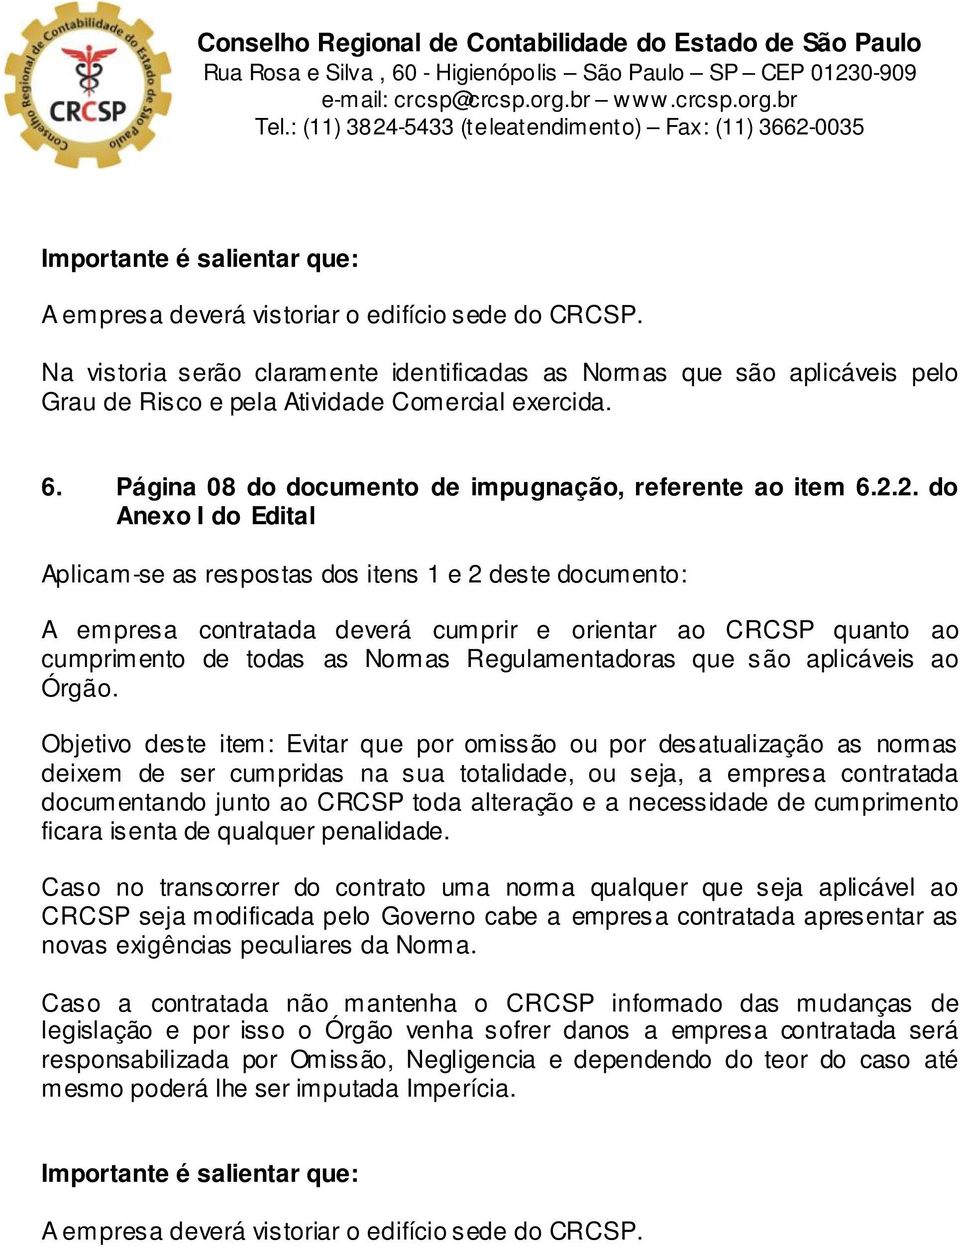 2. do Aplicam-se as respostas dos itens 1 e 2 deste documento: A empresa contratada deverá cumprir e orientar ao CRCSP quanto ao cumprimento de todas as Normas Regulamentadoras que são aplicáveis ao